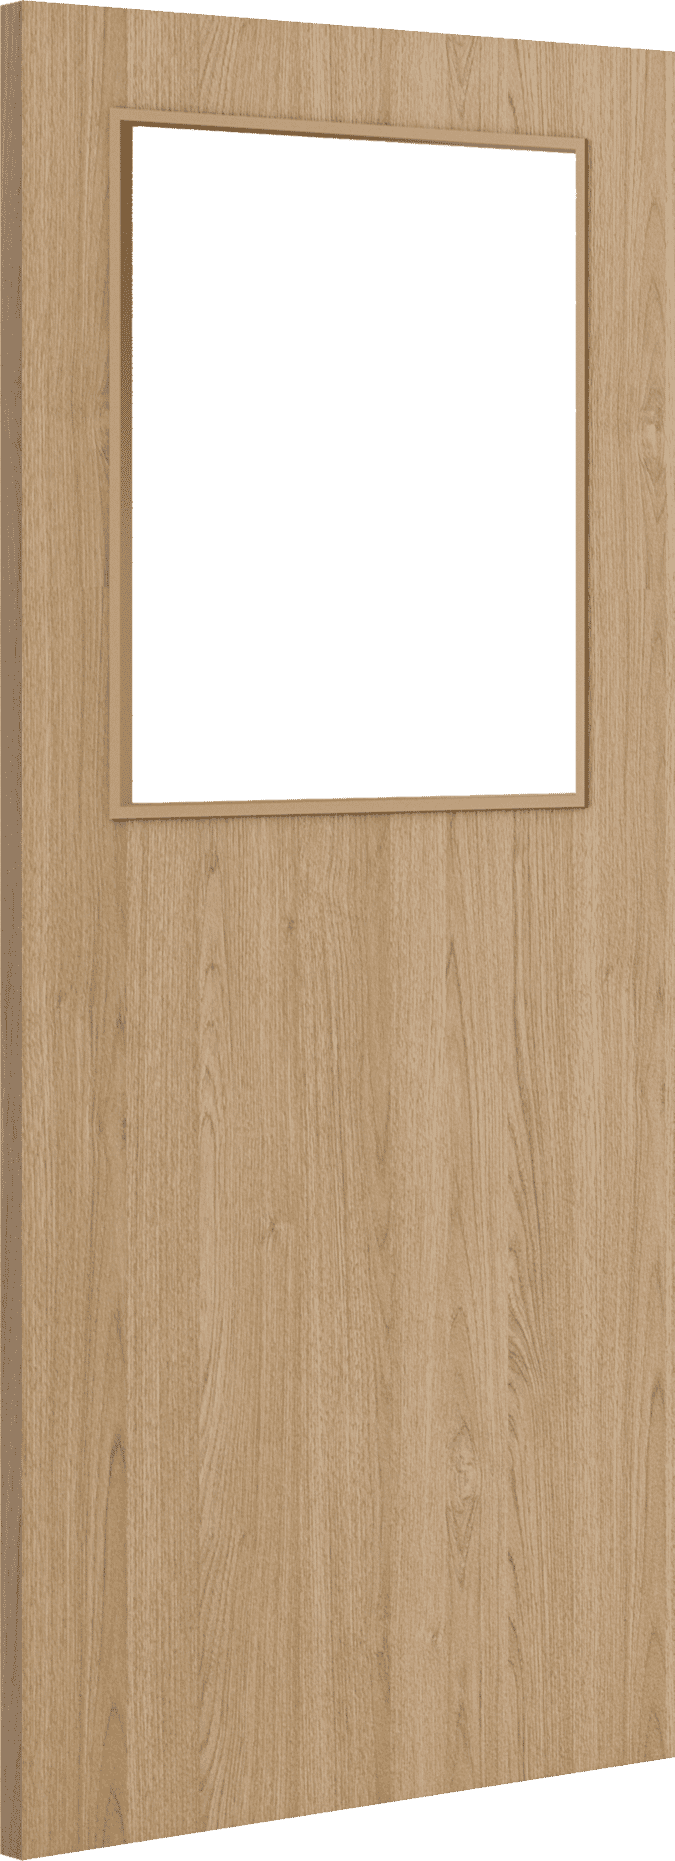 1981mm x 838mm x 44mm (33") Architectural Oak 01 Clear Glazed - Prefinished FD30 Fire Door Blank